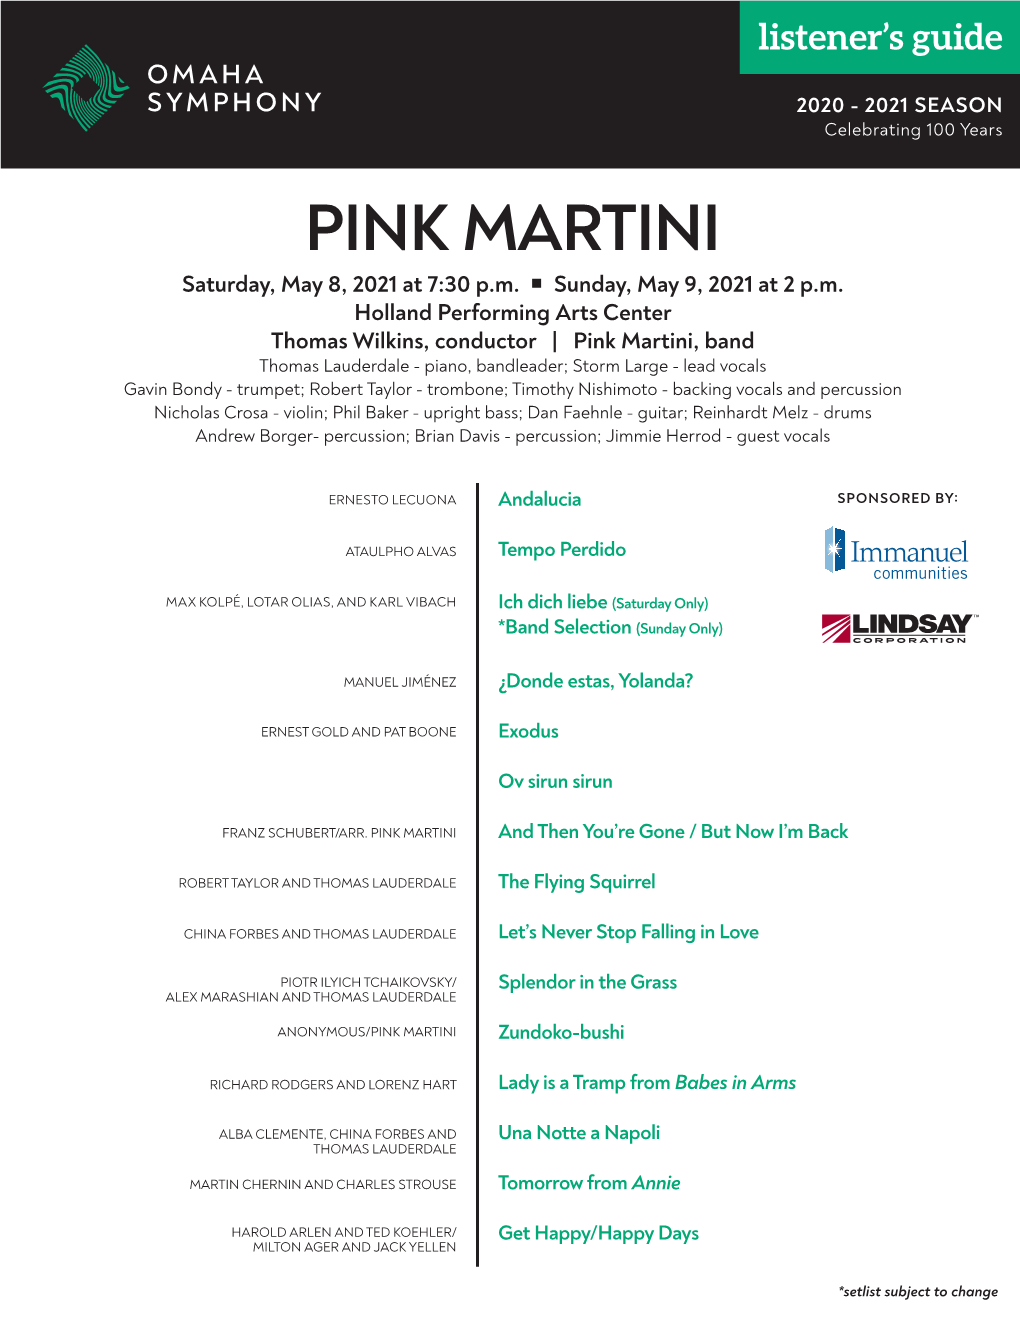 PINK MARTINI Saturday, May 8, 2021 at 7:30 P.M